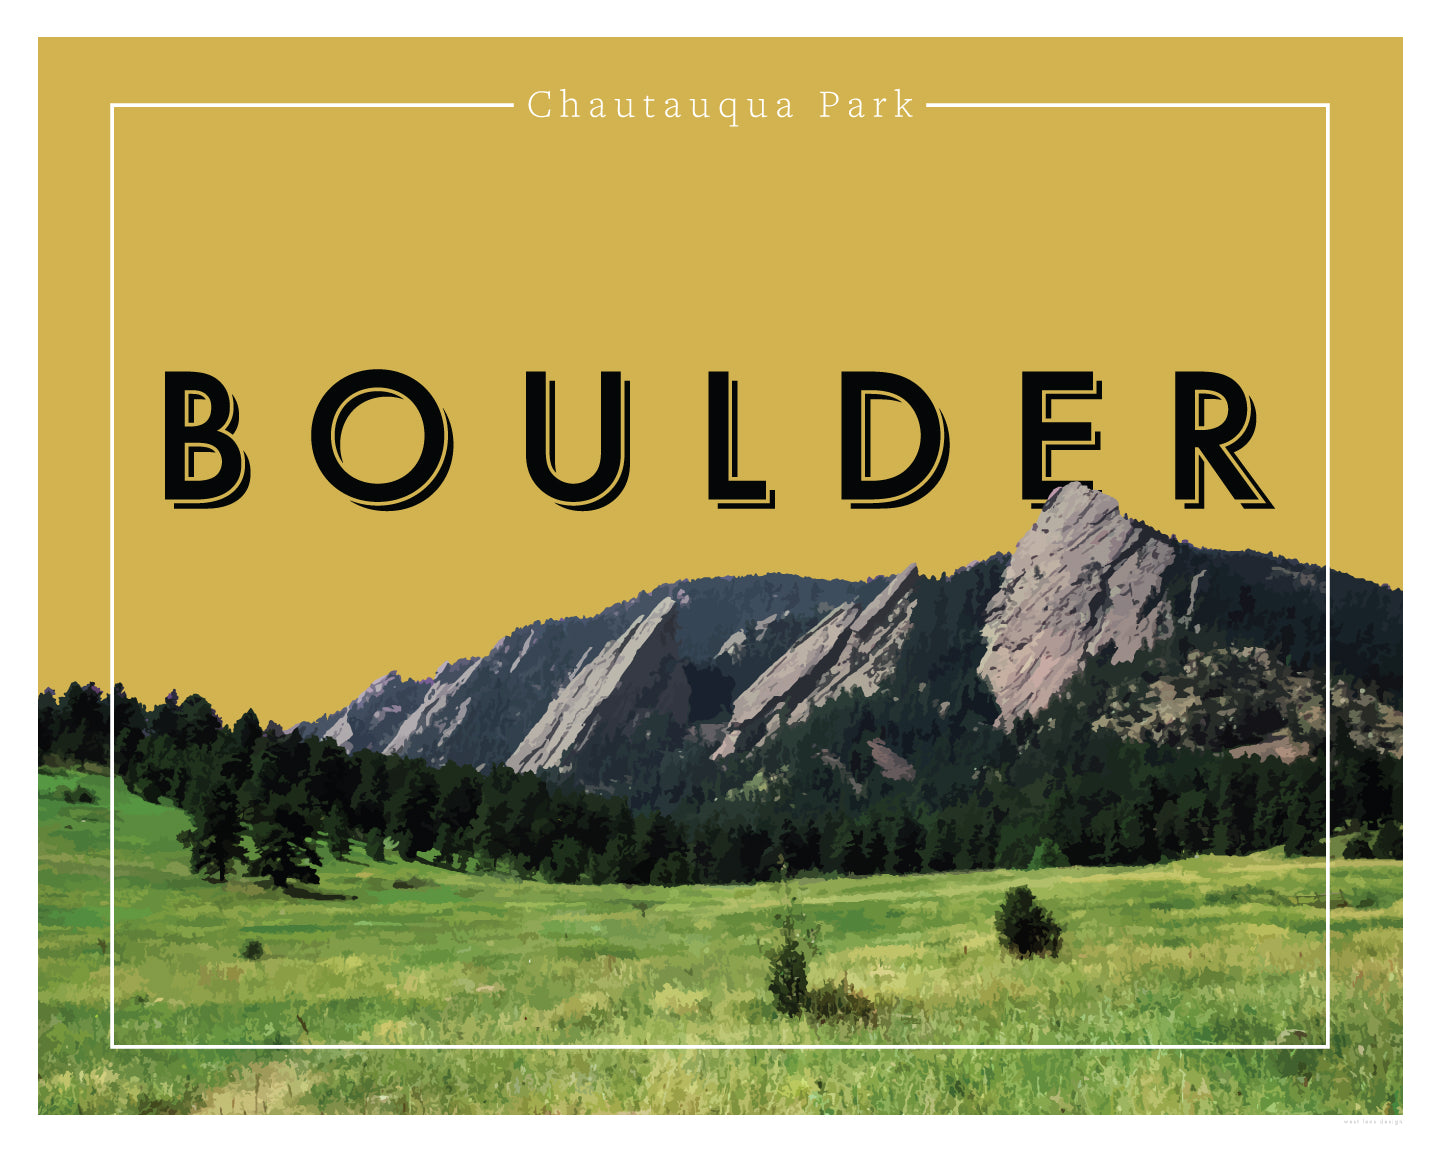 Boulder, Colorado - Chautauqua Park, Wall Art, Print Only (No Frame)